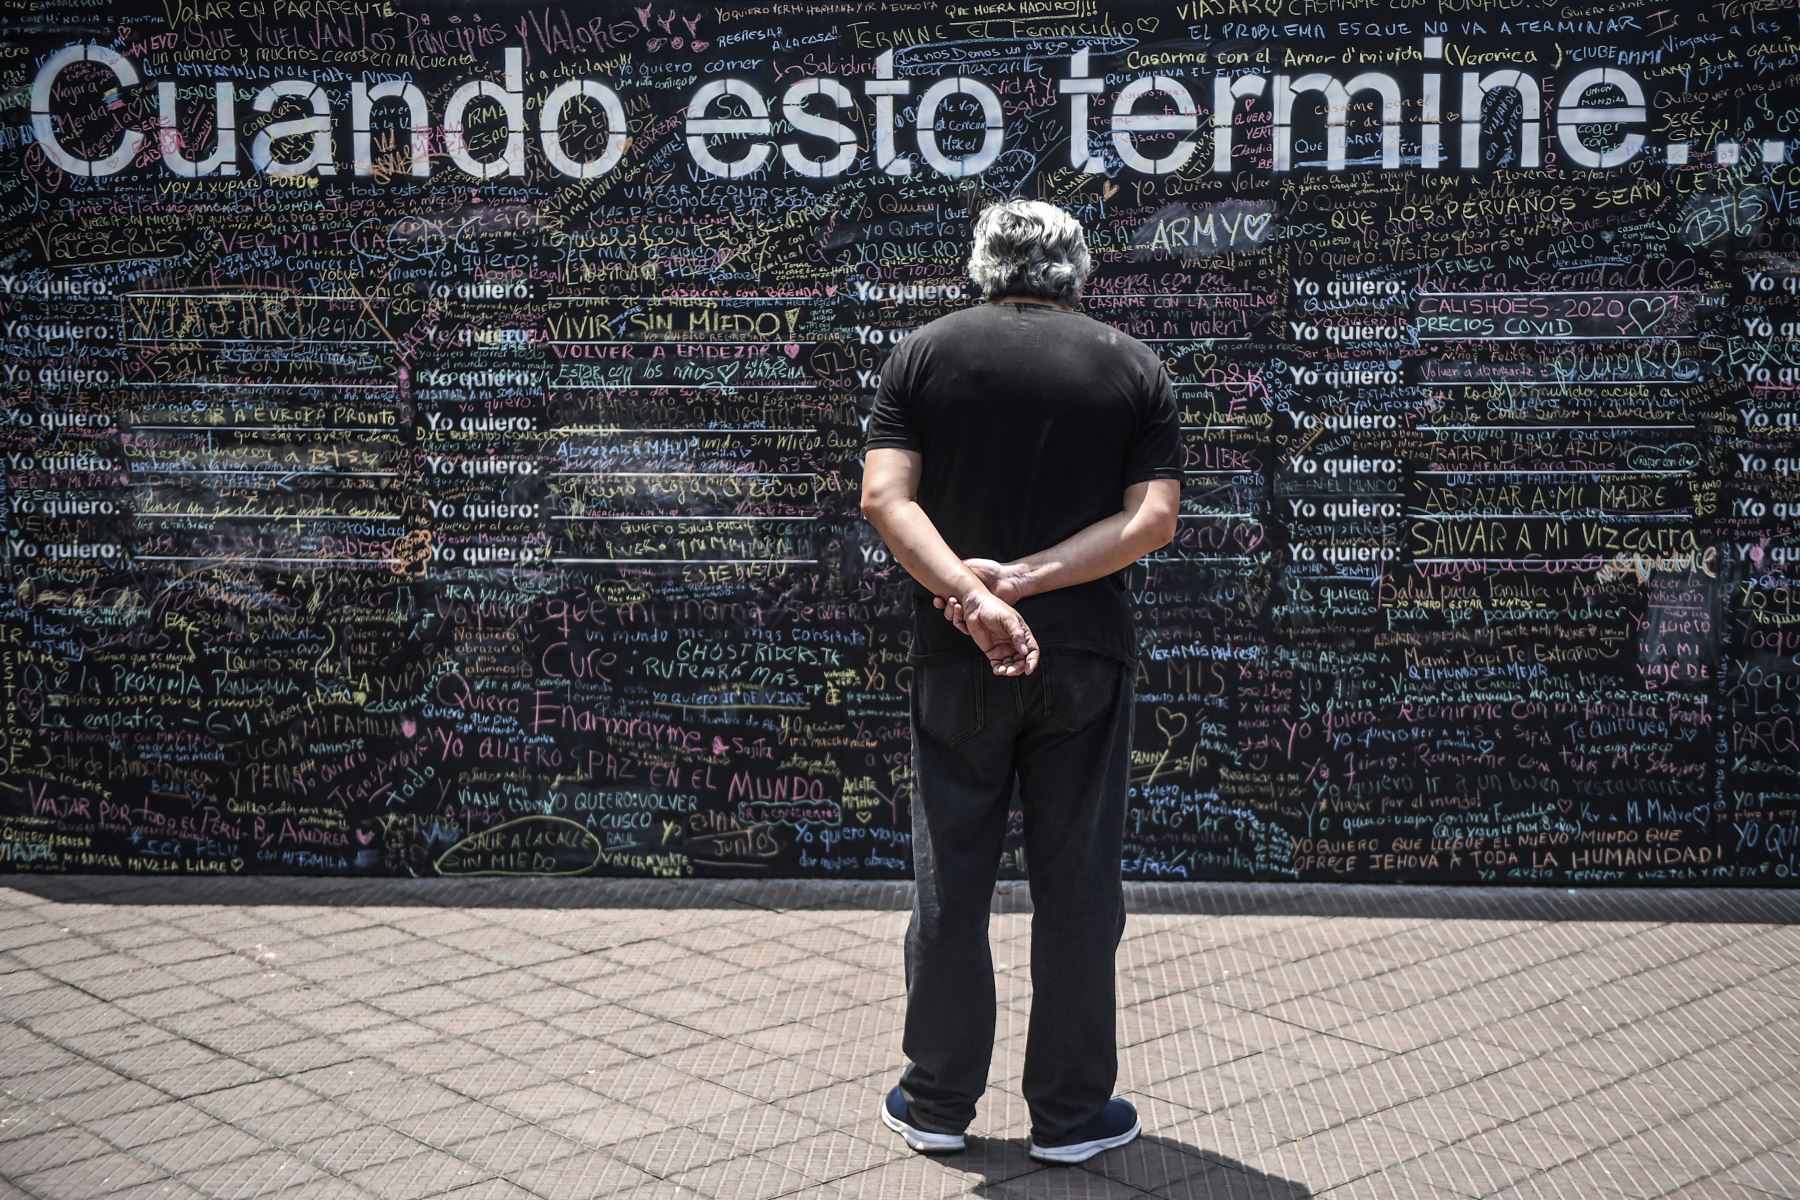 El "Muro de la Esperanza": peruanos plasman sueños a cumplir cuando culmine la pandemia. La pizarra se encuentra ubicada en el Parque Kenendy, en Miraflores. Foto: AFP